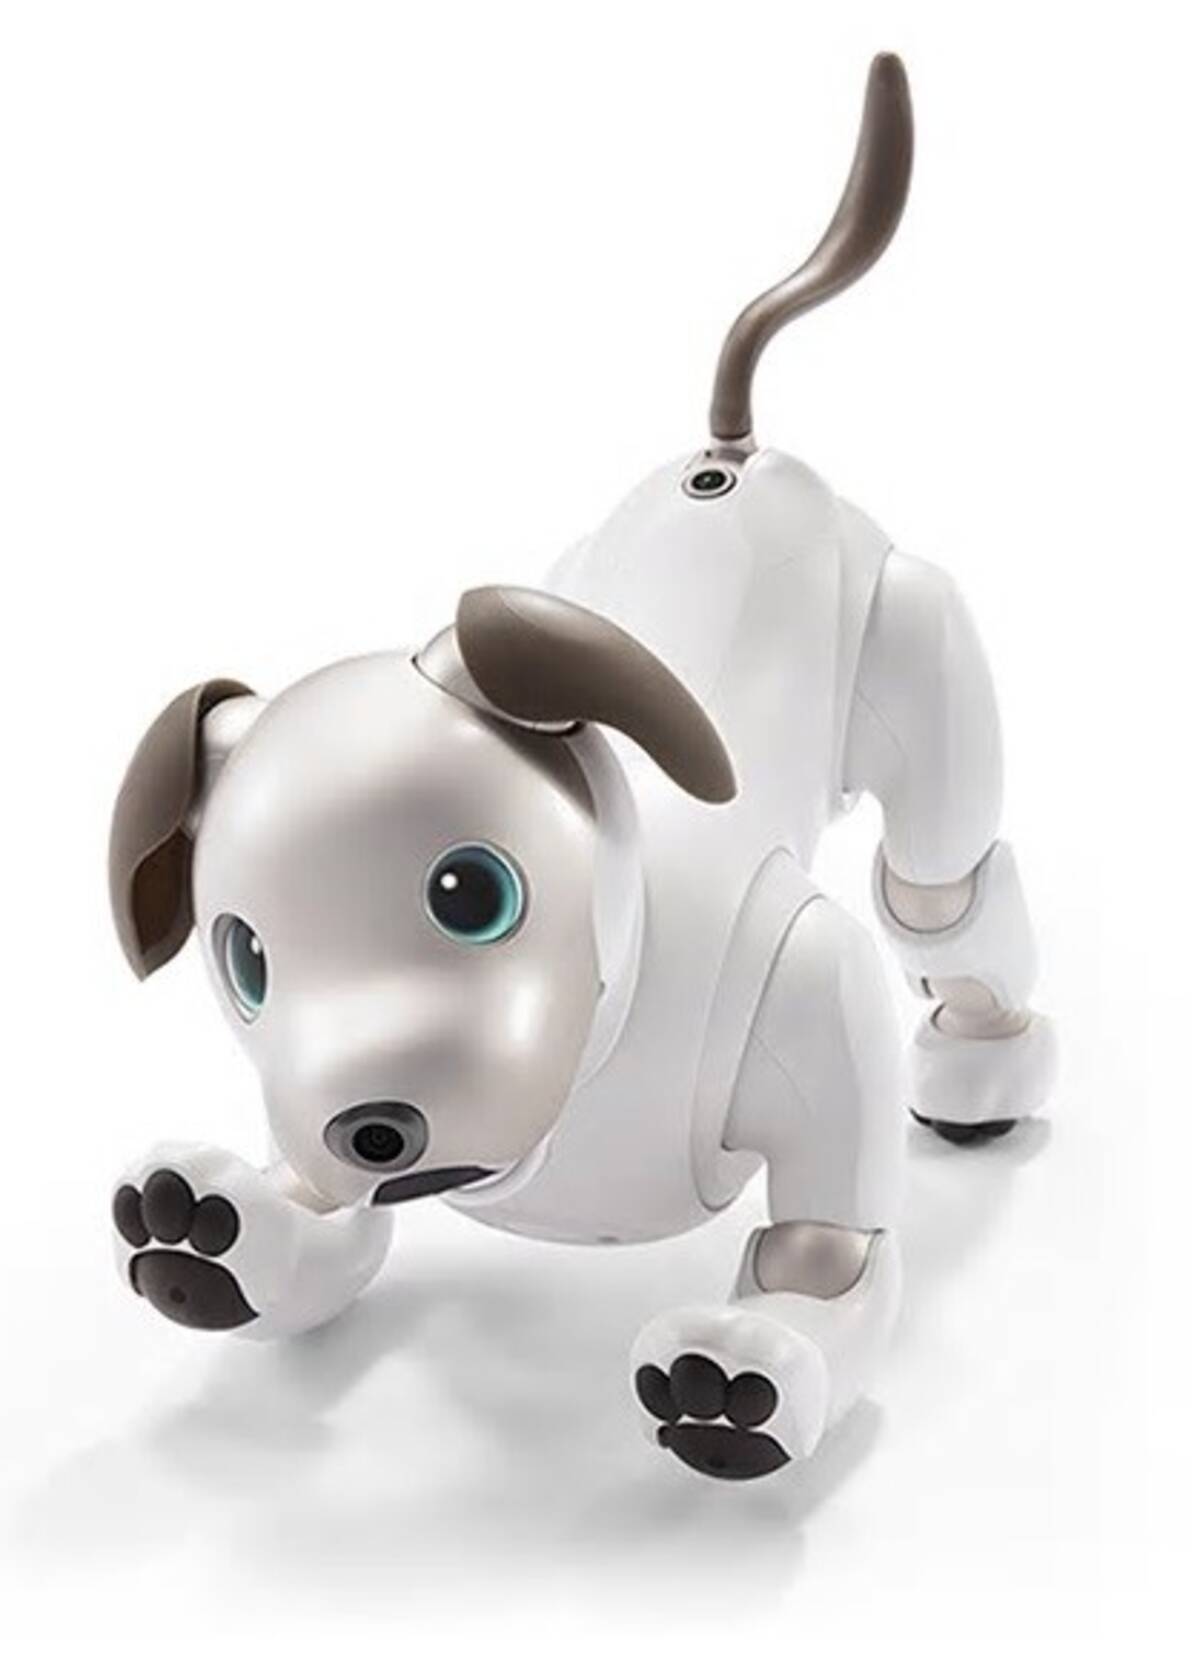 ソニー ロボット犬 Aibo 発売 12年ぶり 17年11月2日 エキサイトニュース